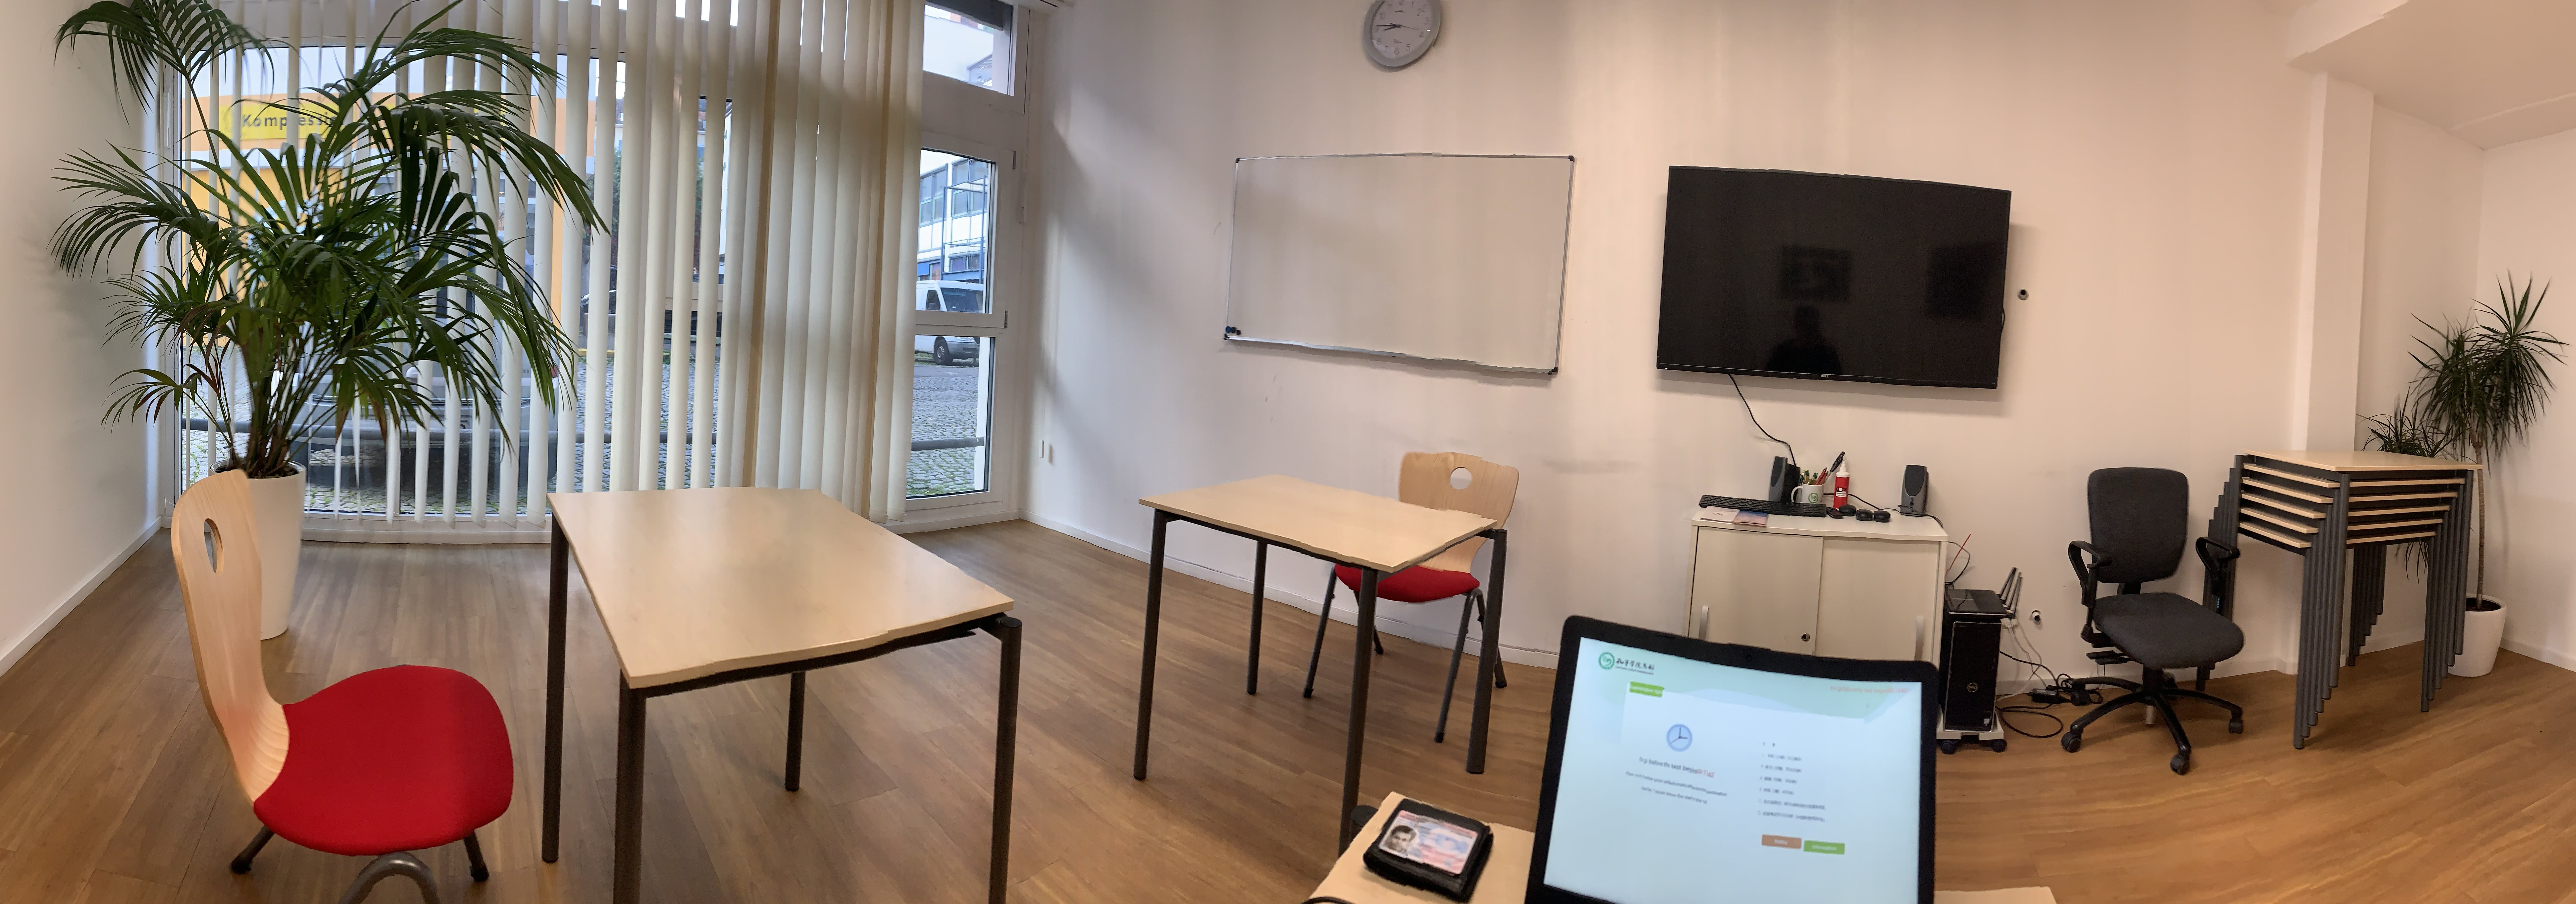 the HSK 6 exam room in Munich’s Confucius Institute